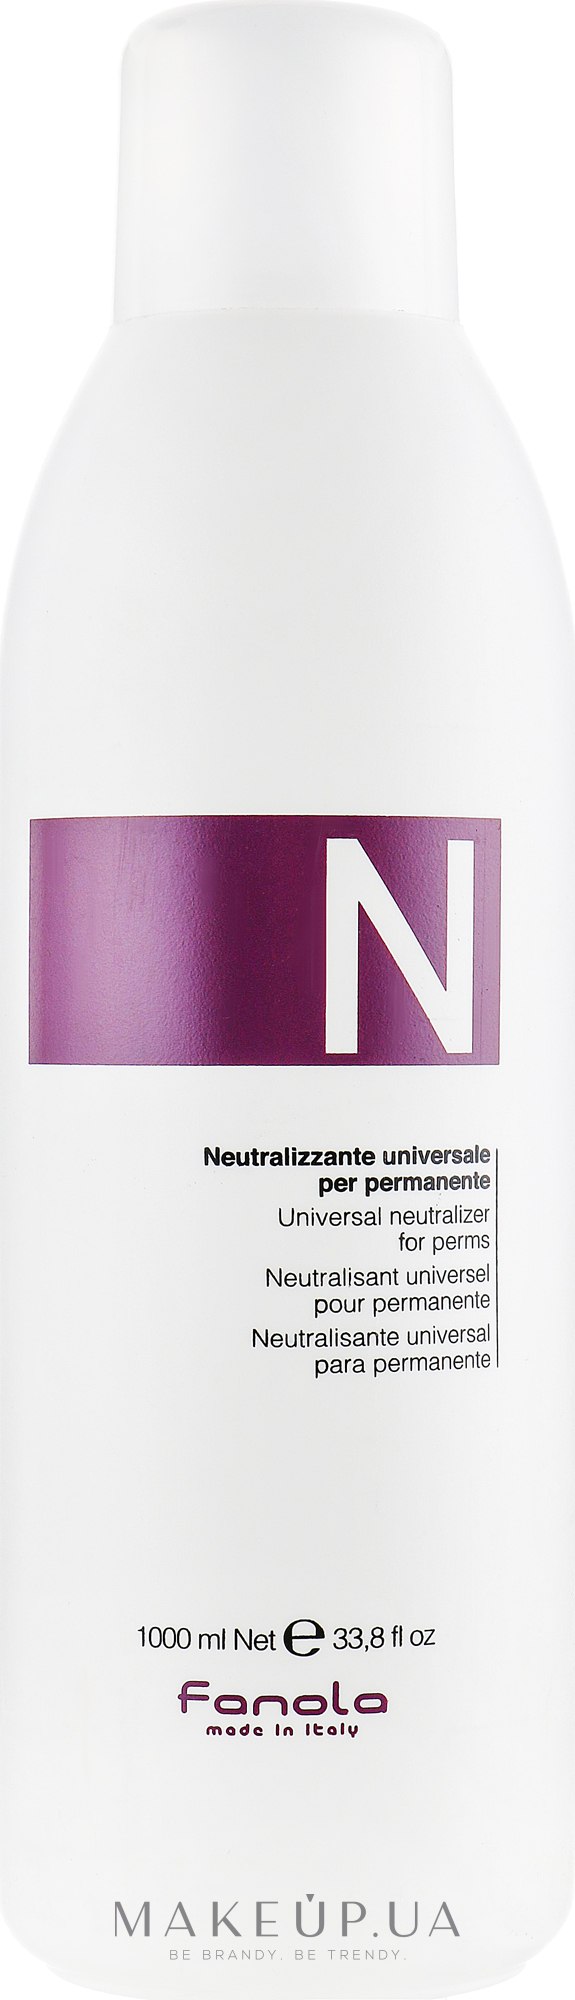 Універсальний нейтралізатор для завивки - Fanola Universal Neutralizer For Perms — фото 1000ml